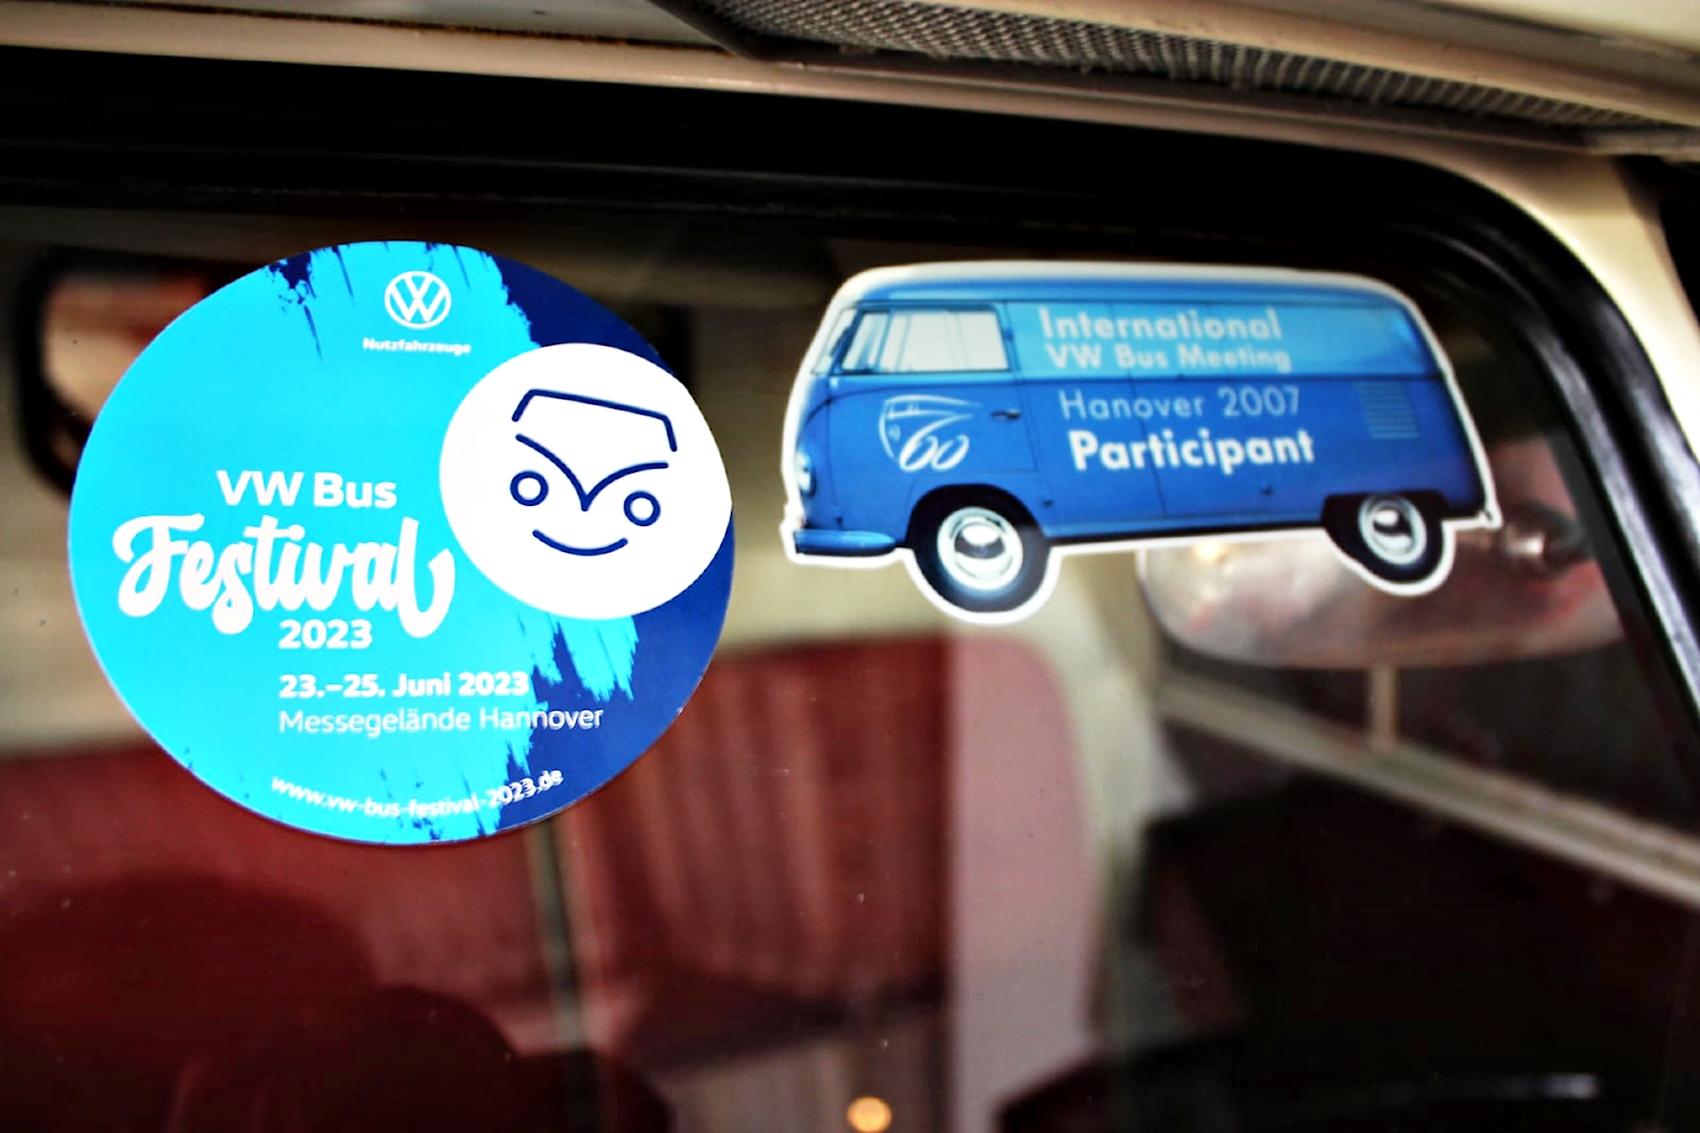 VW Bus Festival Kembali Setelah 16 Tahun